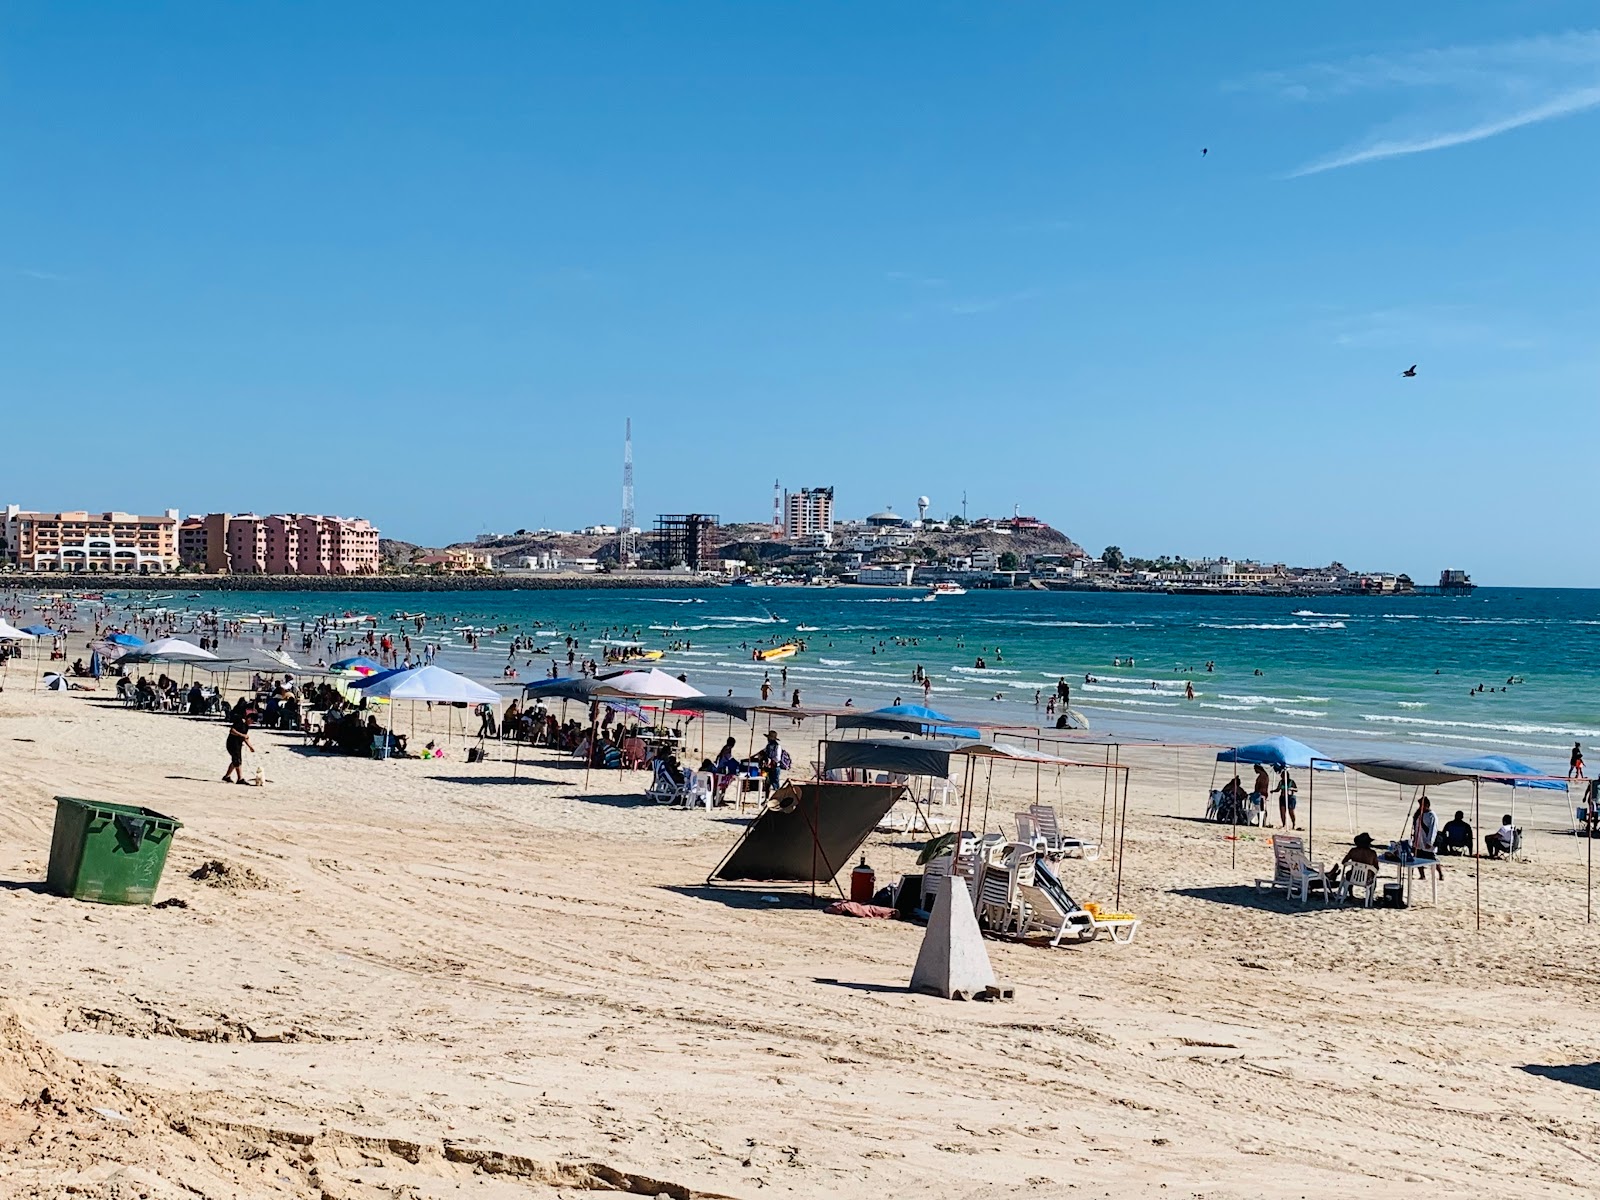 Fotografie cu Playa Hermosa - locul popular printre cunoscătorii de relaxare